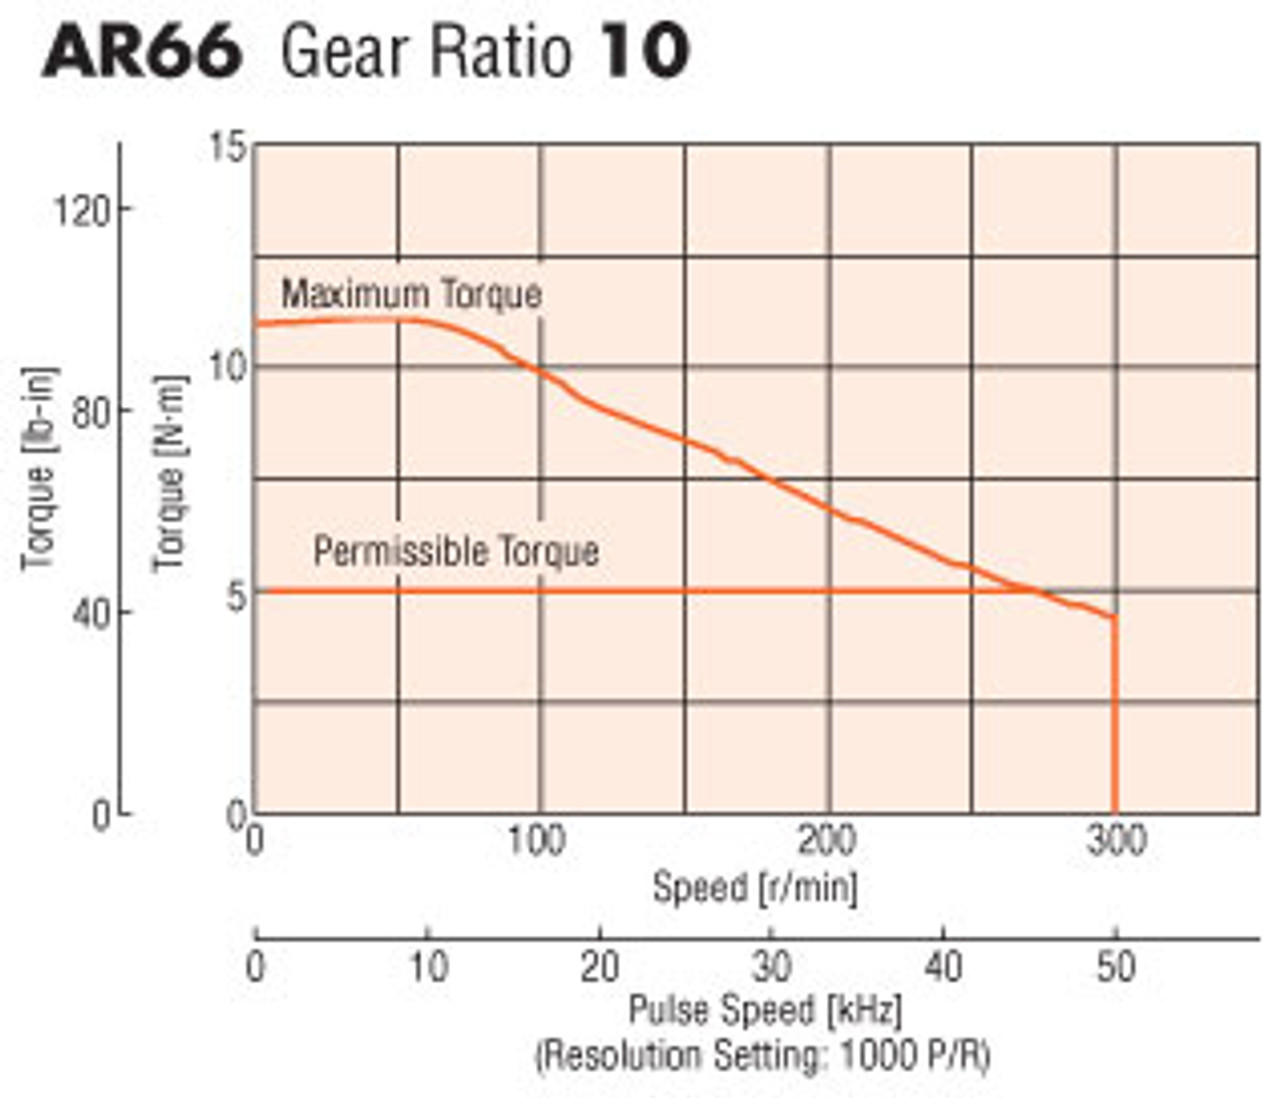 AR66AAD-PS10-3 - Speed-Torque